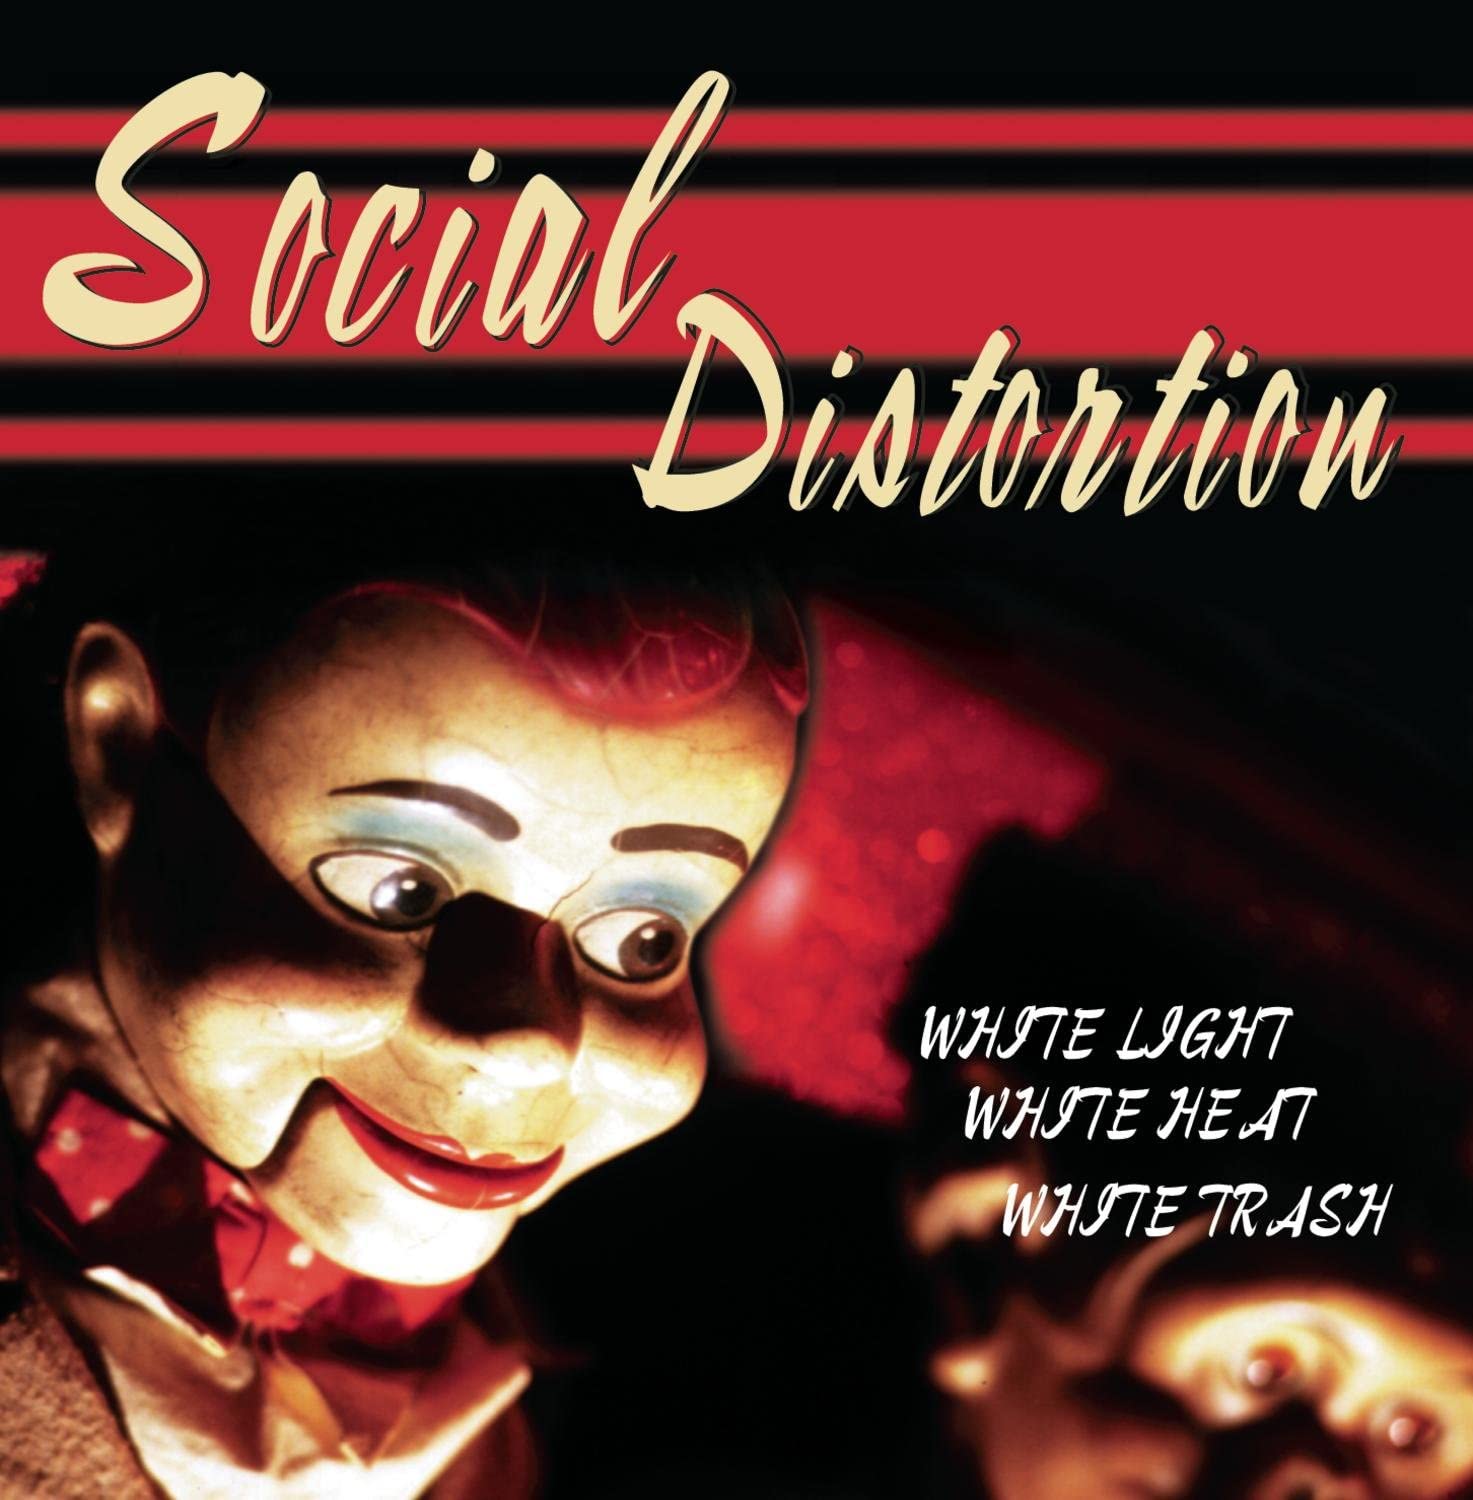 Social Distortion - White Light White Heat White Trash (Vinyl LP)